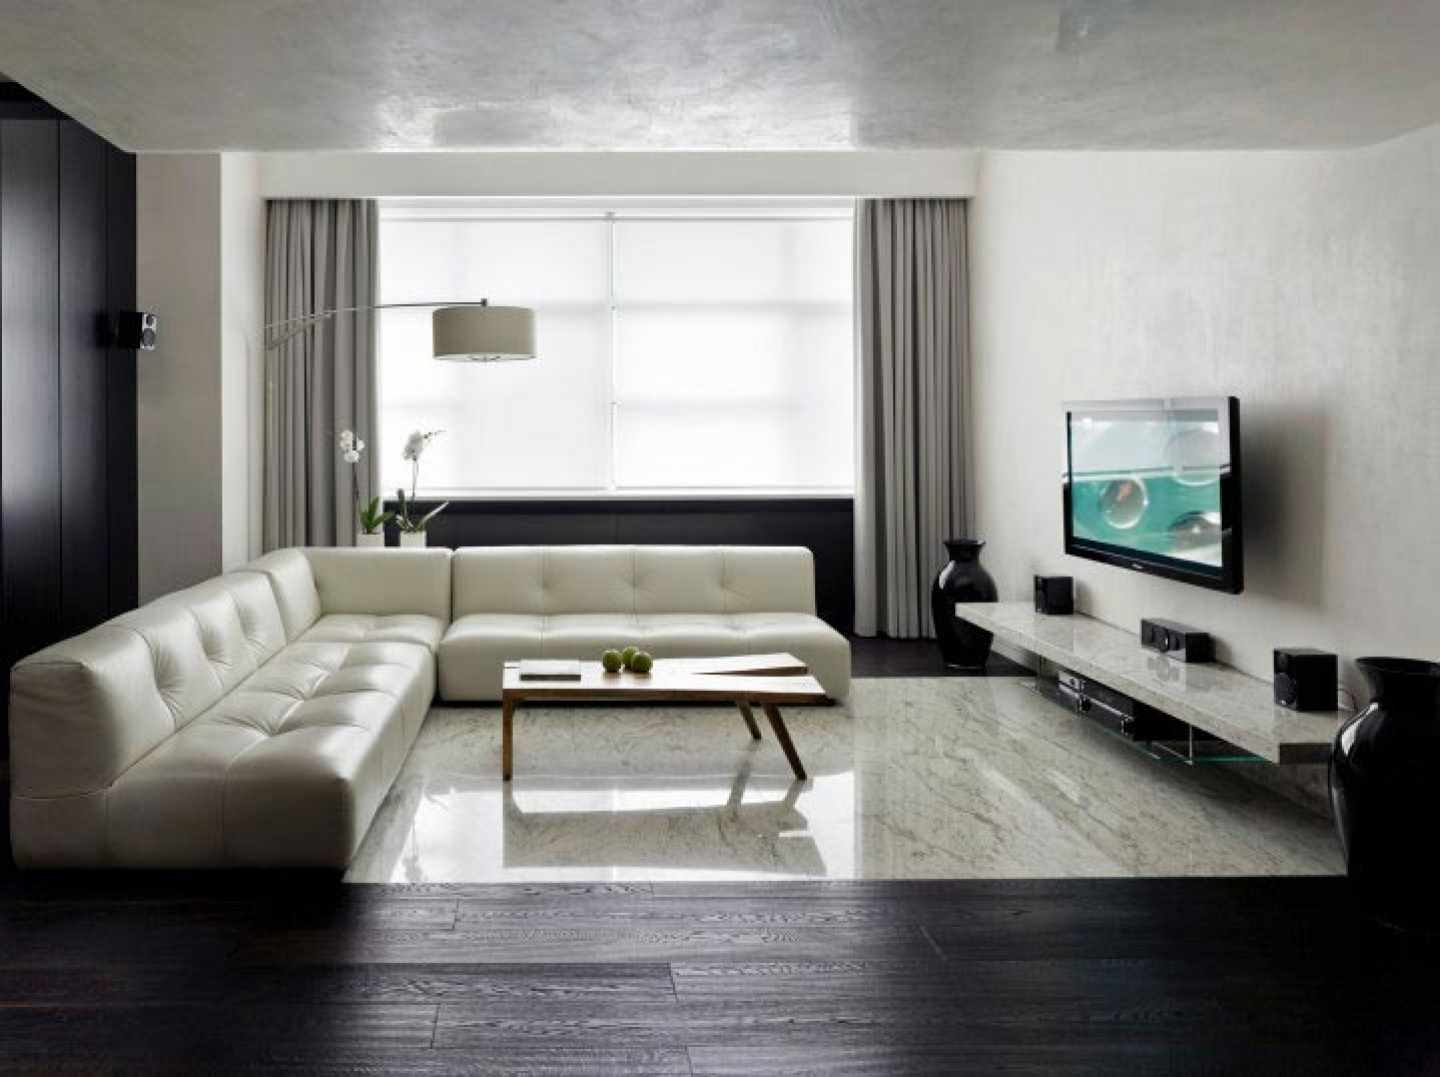 um exemplo de como usar o design brilhante de uma sala de estar no estilo do minimalismo